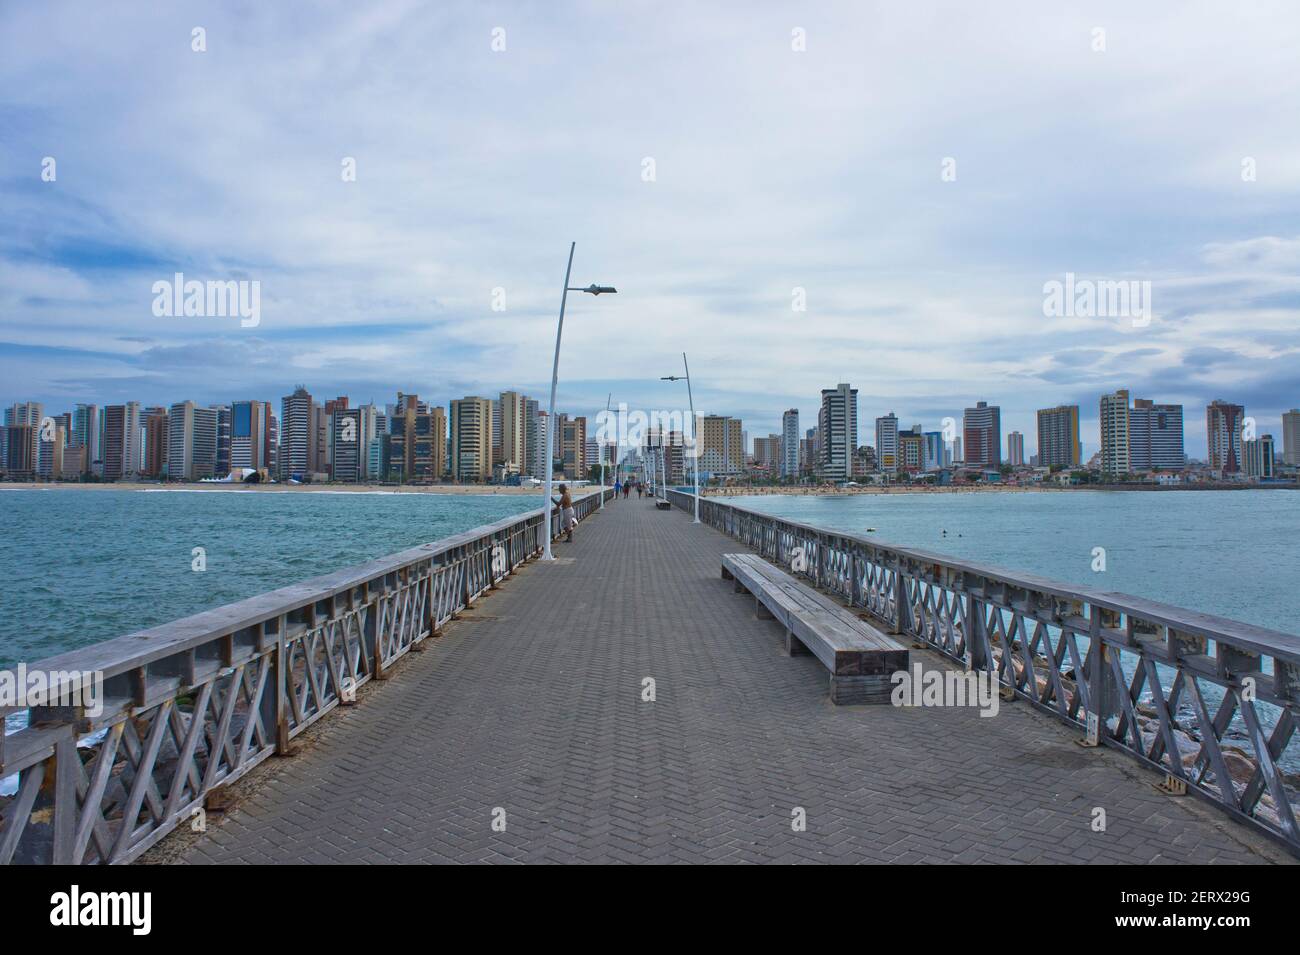 Fortaleza, skyline della città moderna accanto alla spiaggia, Brasile, Sud America Foto Stock